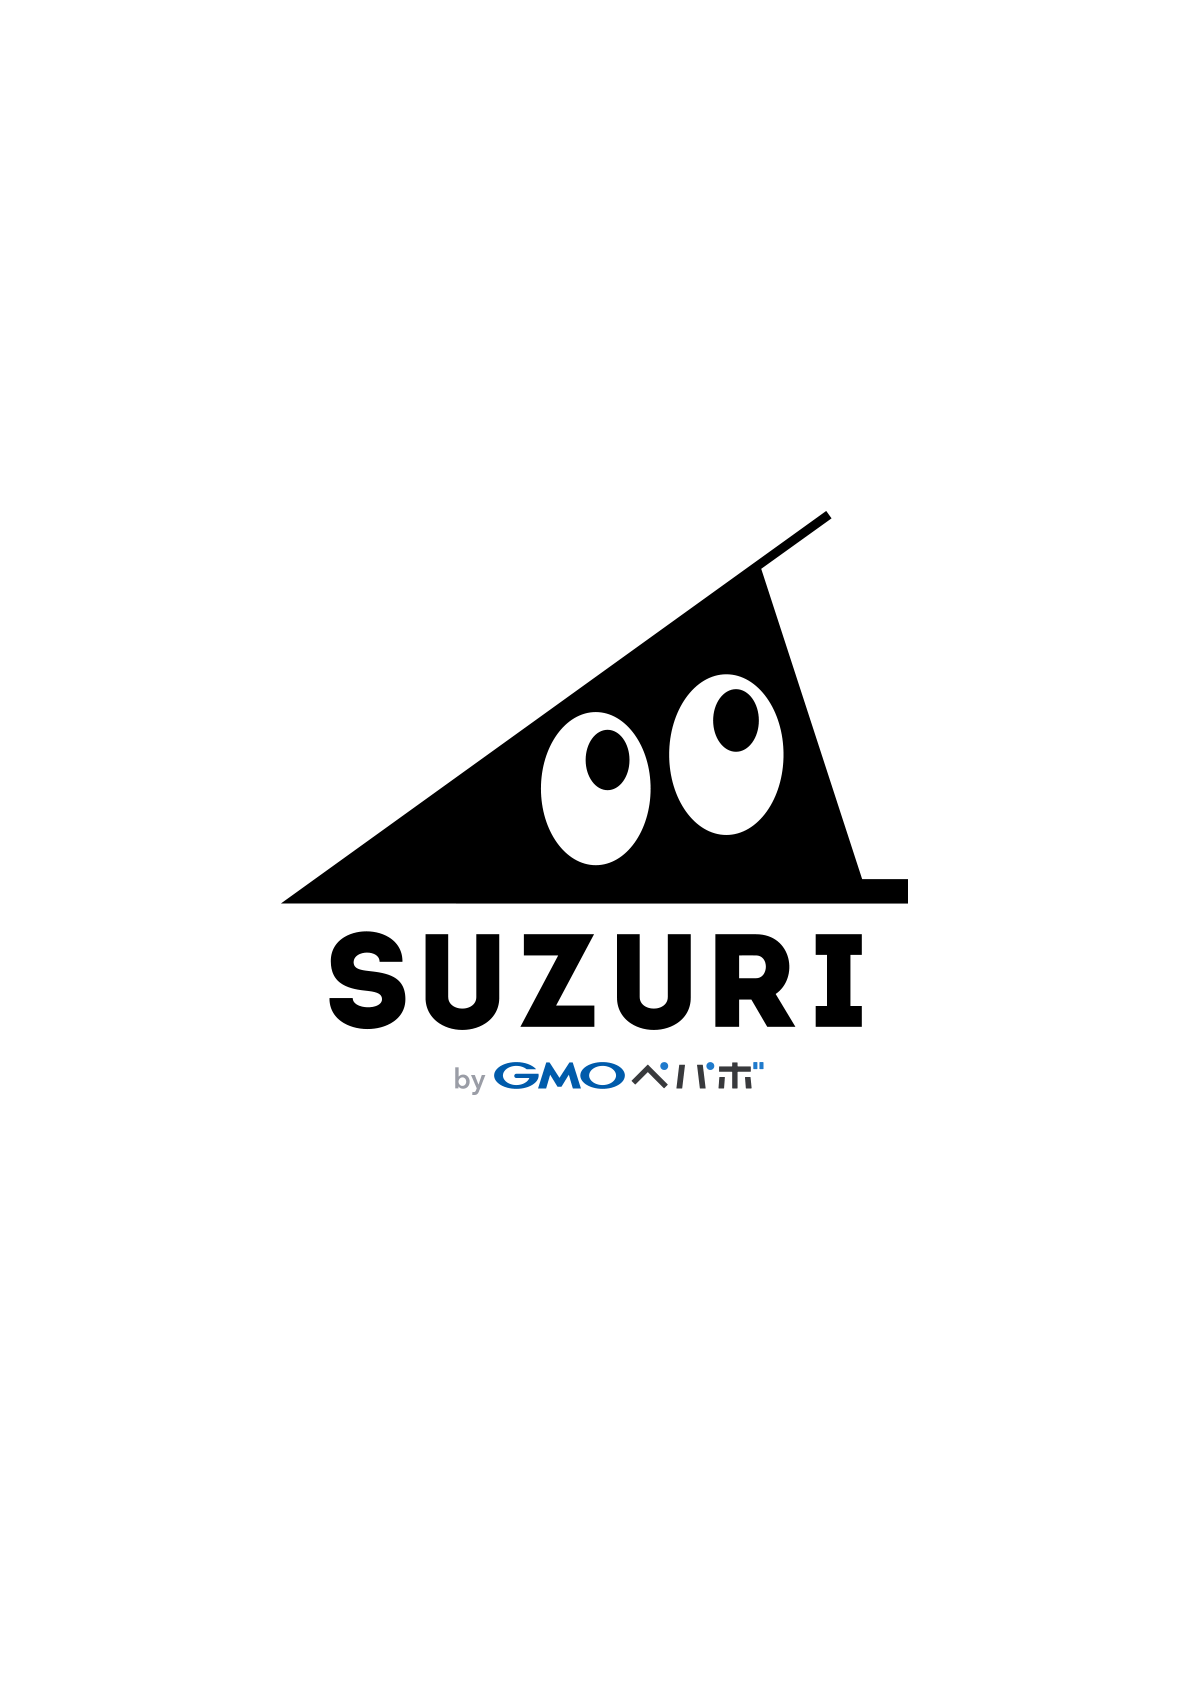 SUZURI